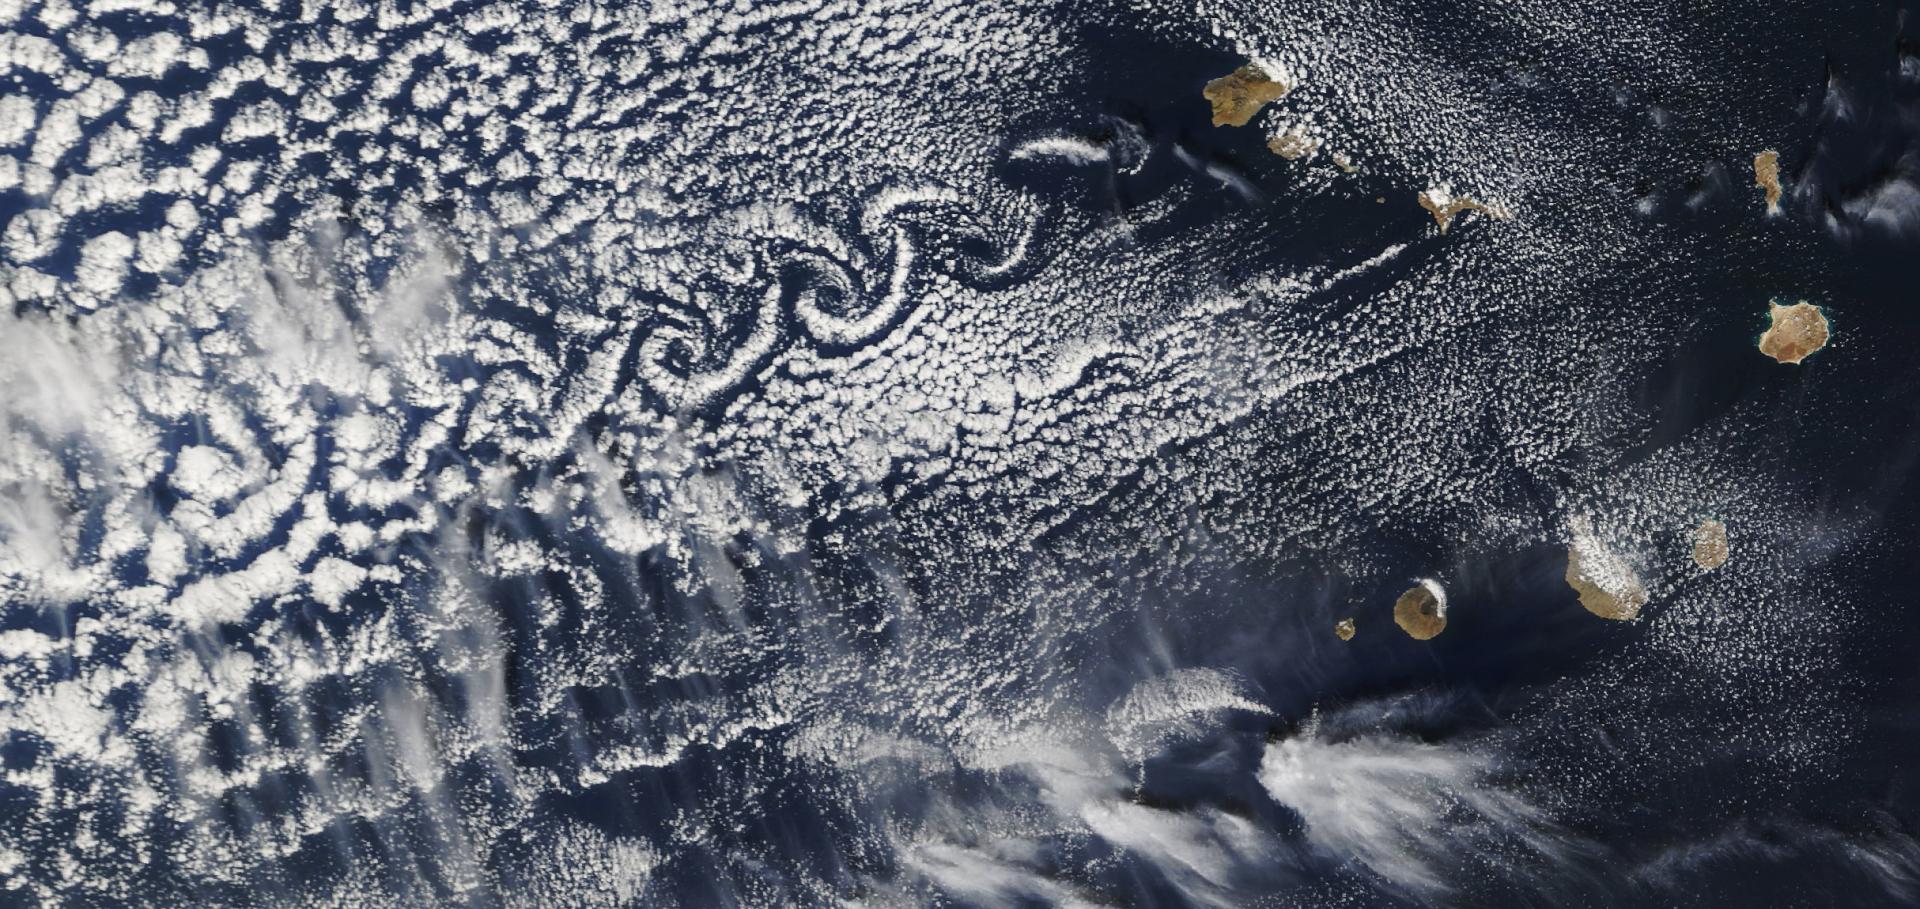 Von Kármán vortices in the Atlantic Ocean (NASA Visible Earth)